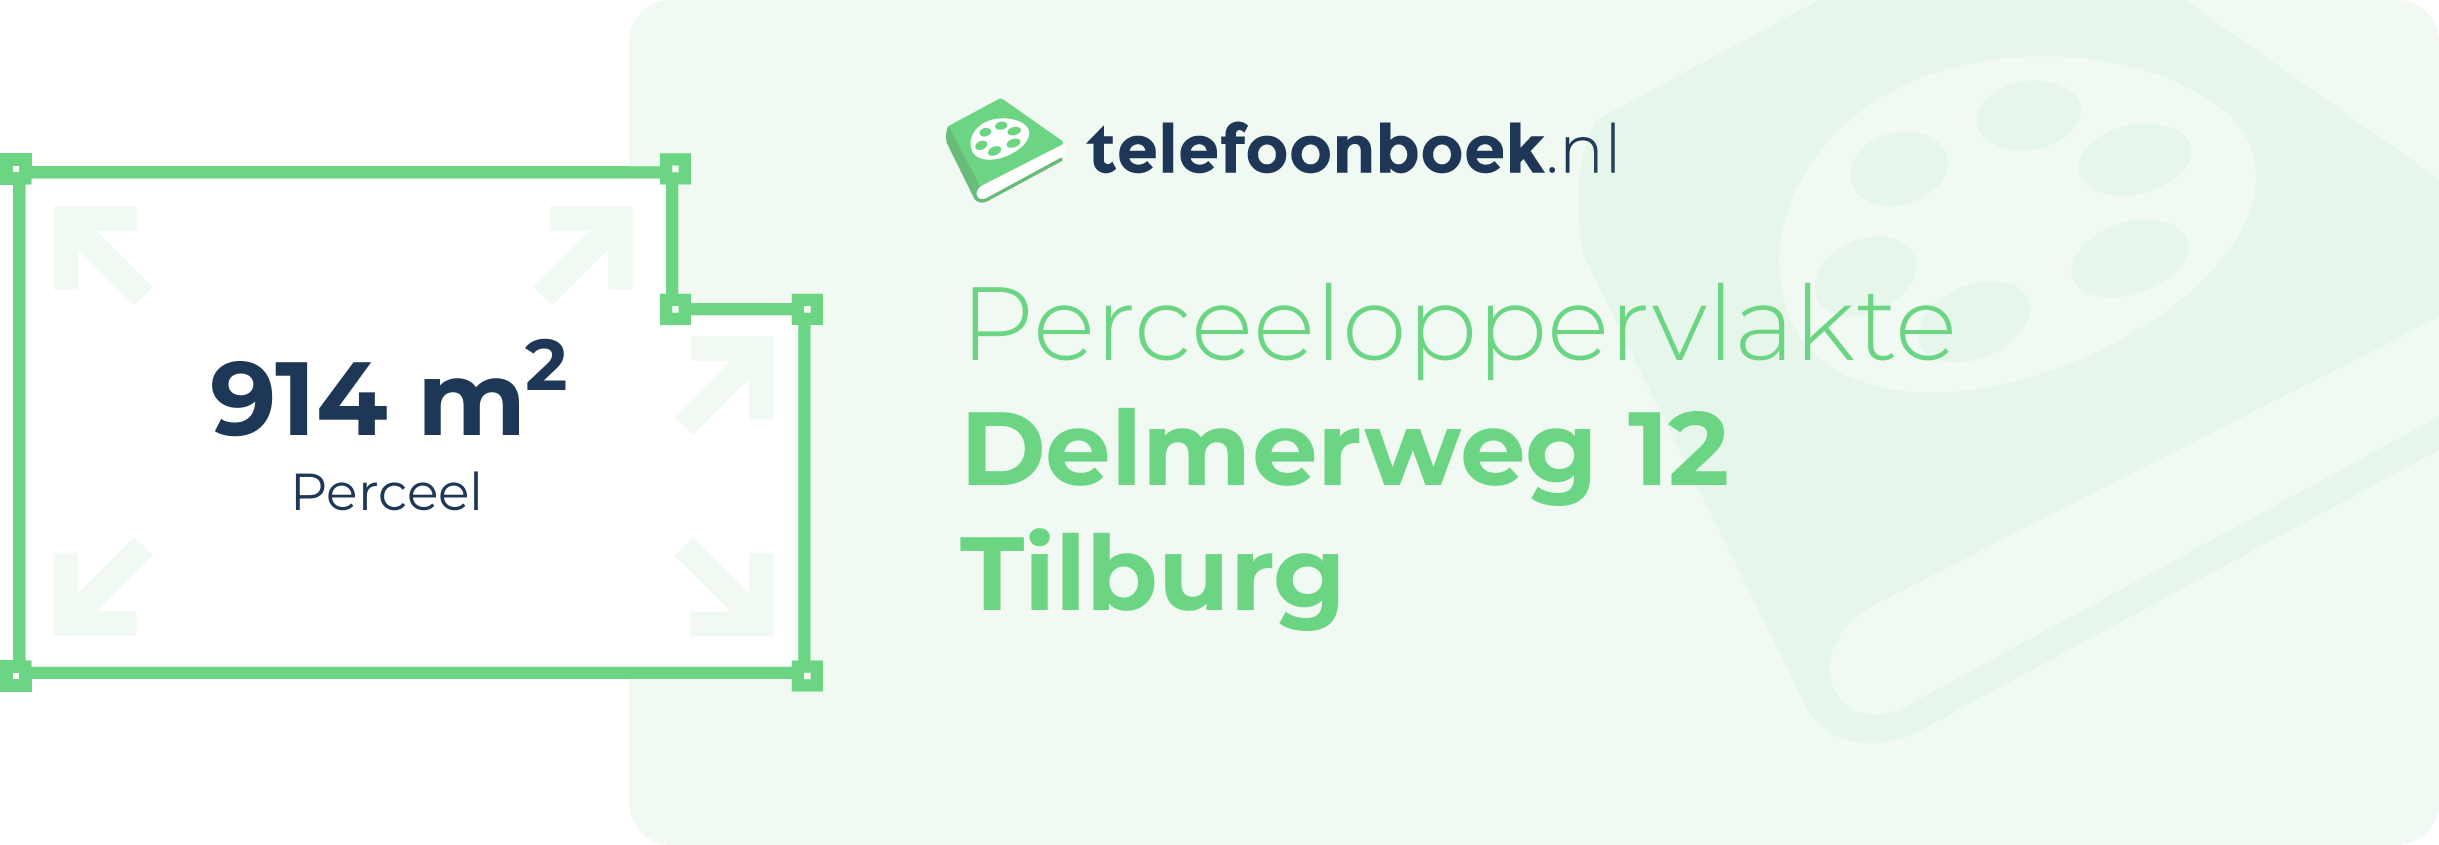 Perceeloppervlakte Delmerweg 12 Tilburg